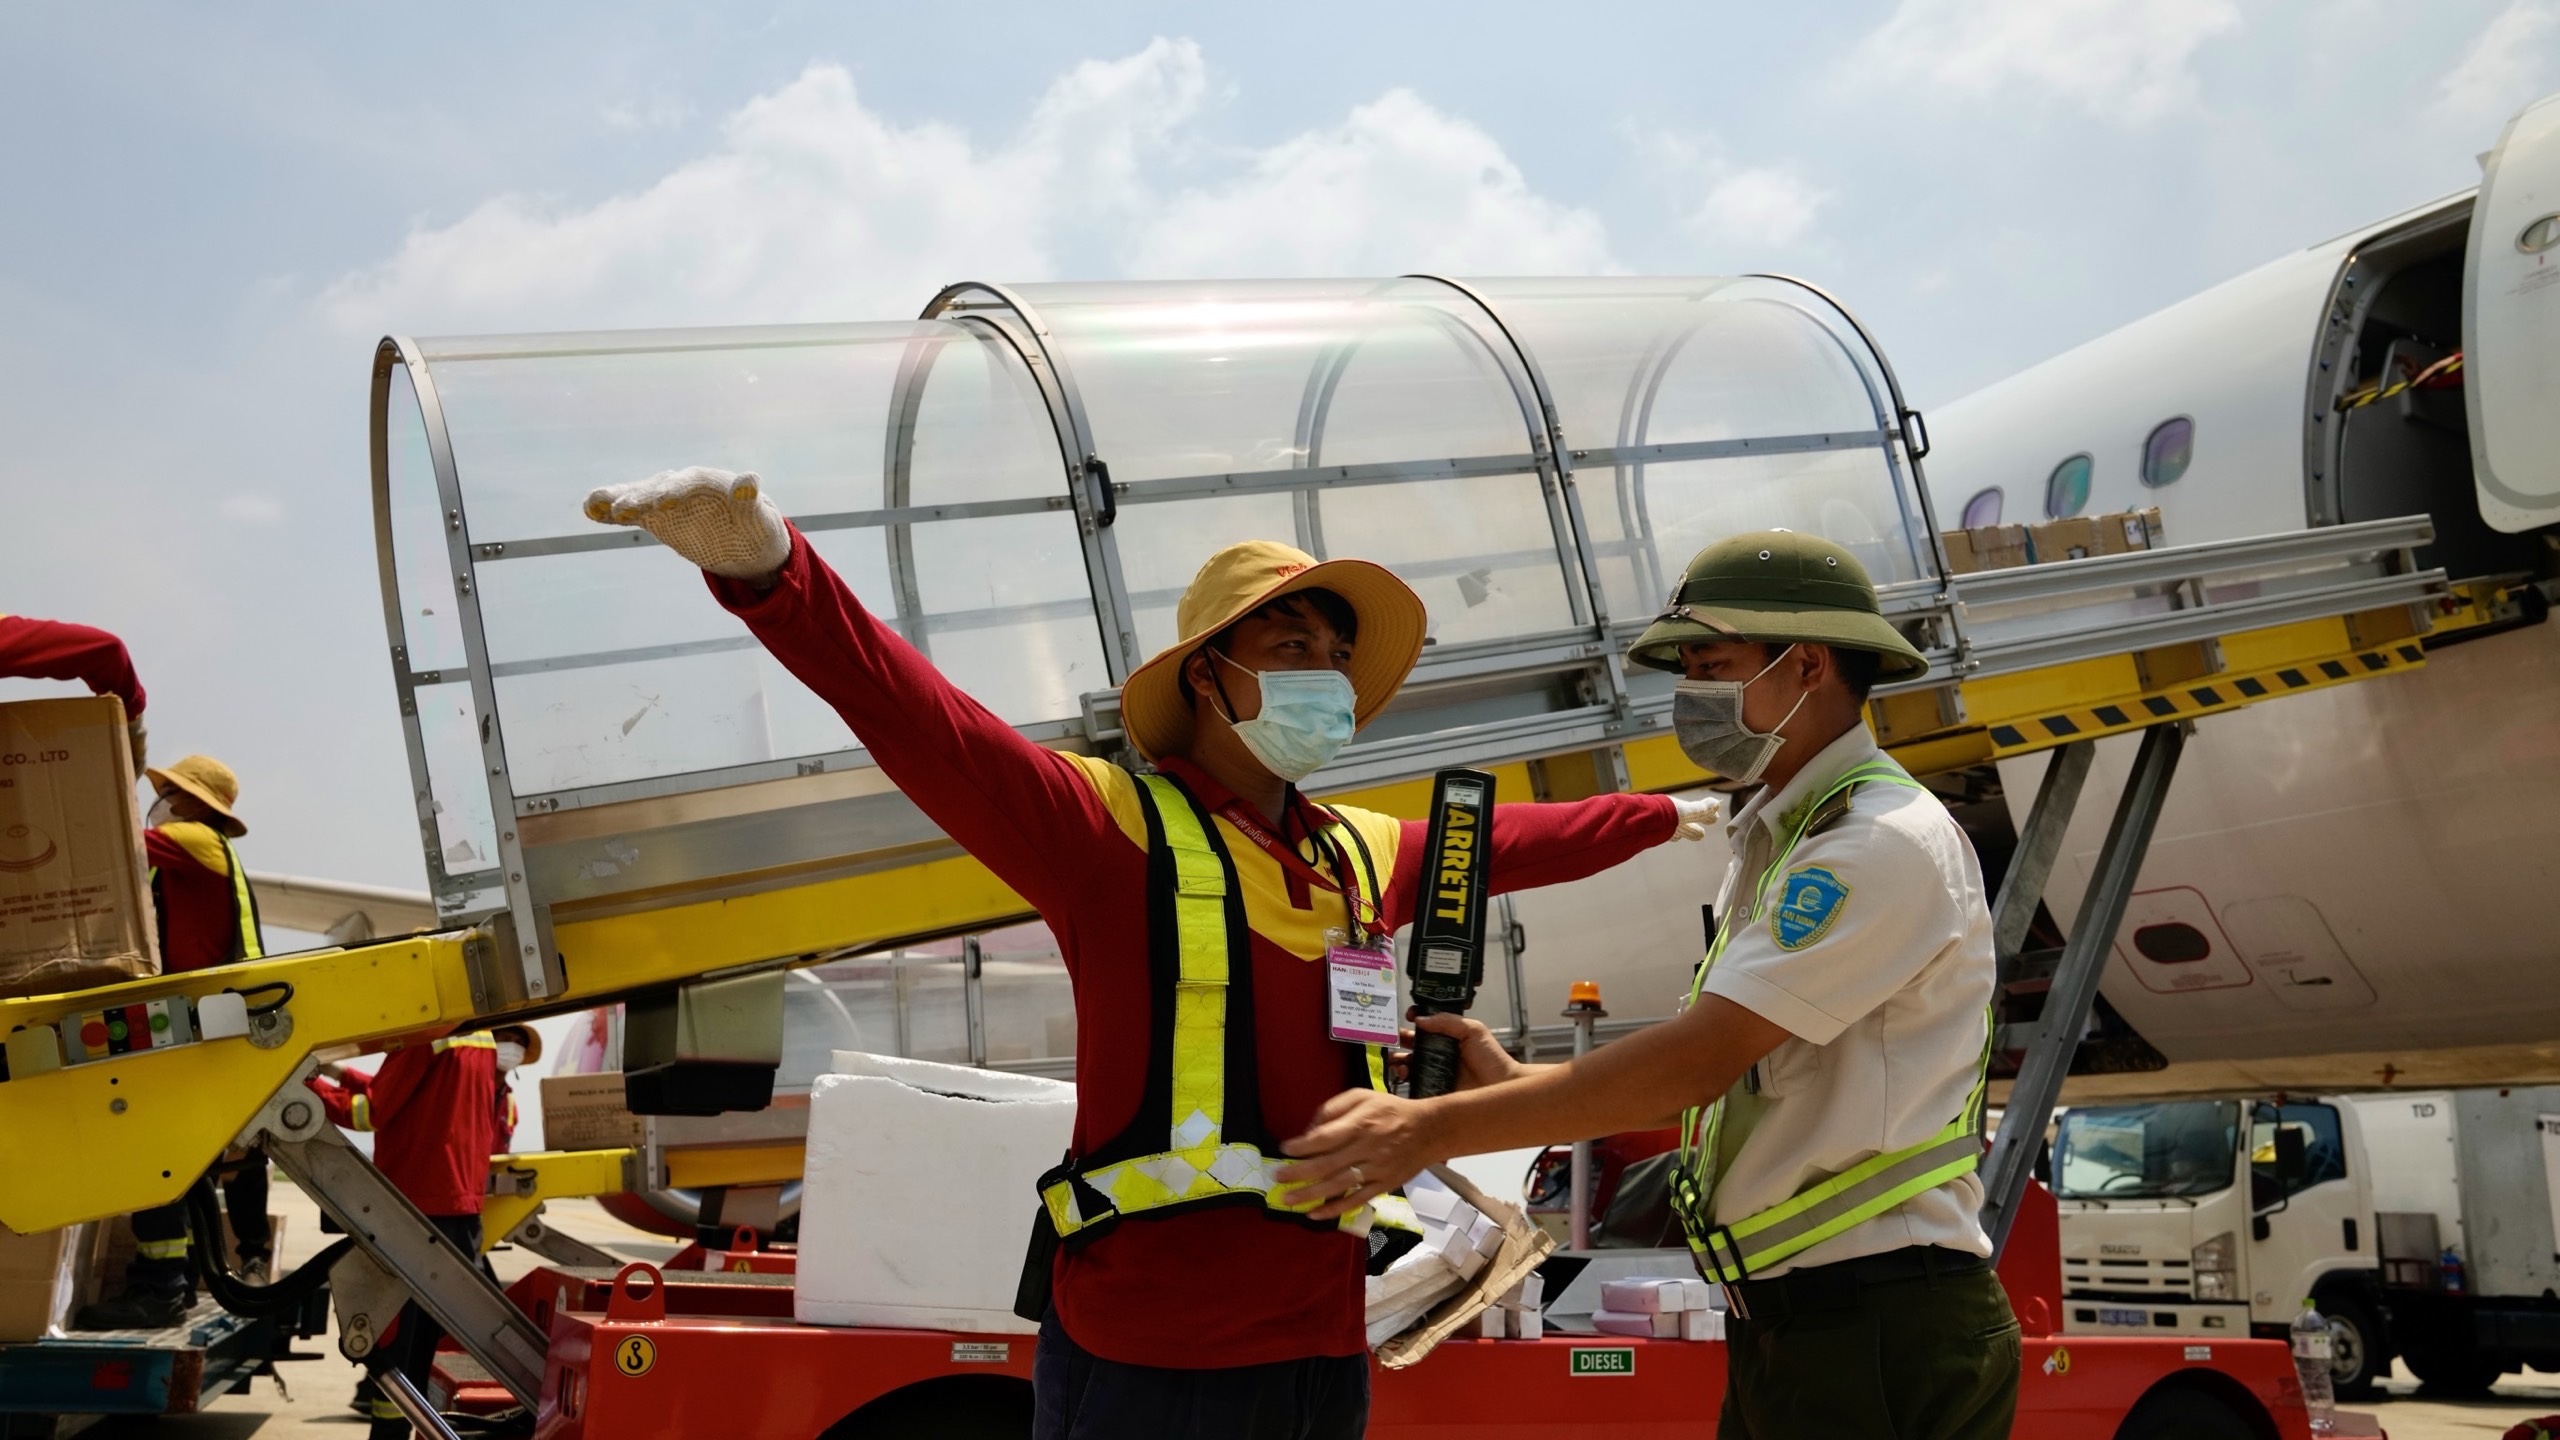 Sân bay Nội Bài hóa chảo lửa trong ngày nắng nóng đỉnh điểm - 10